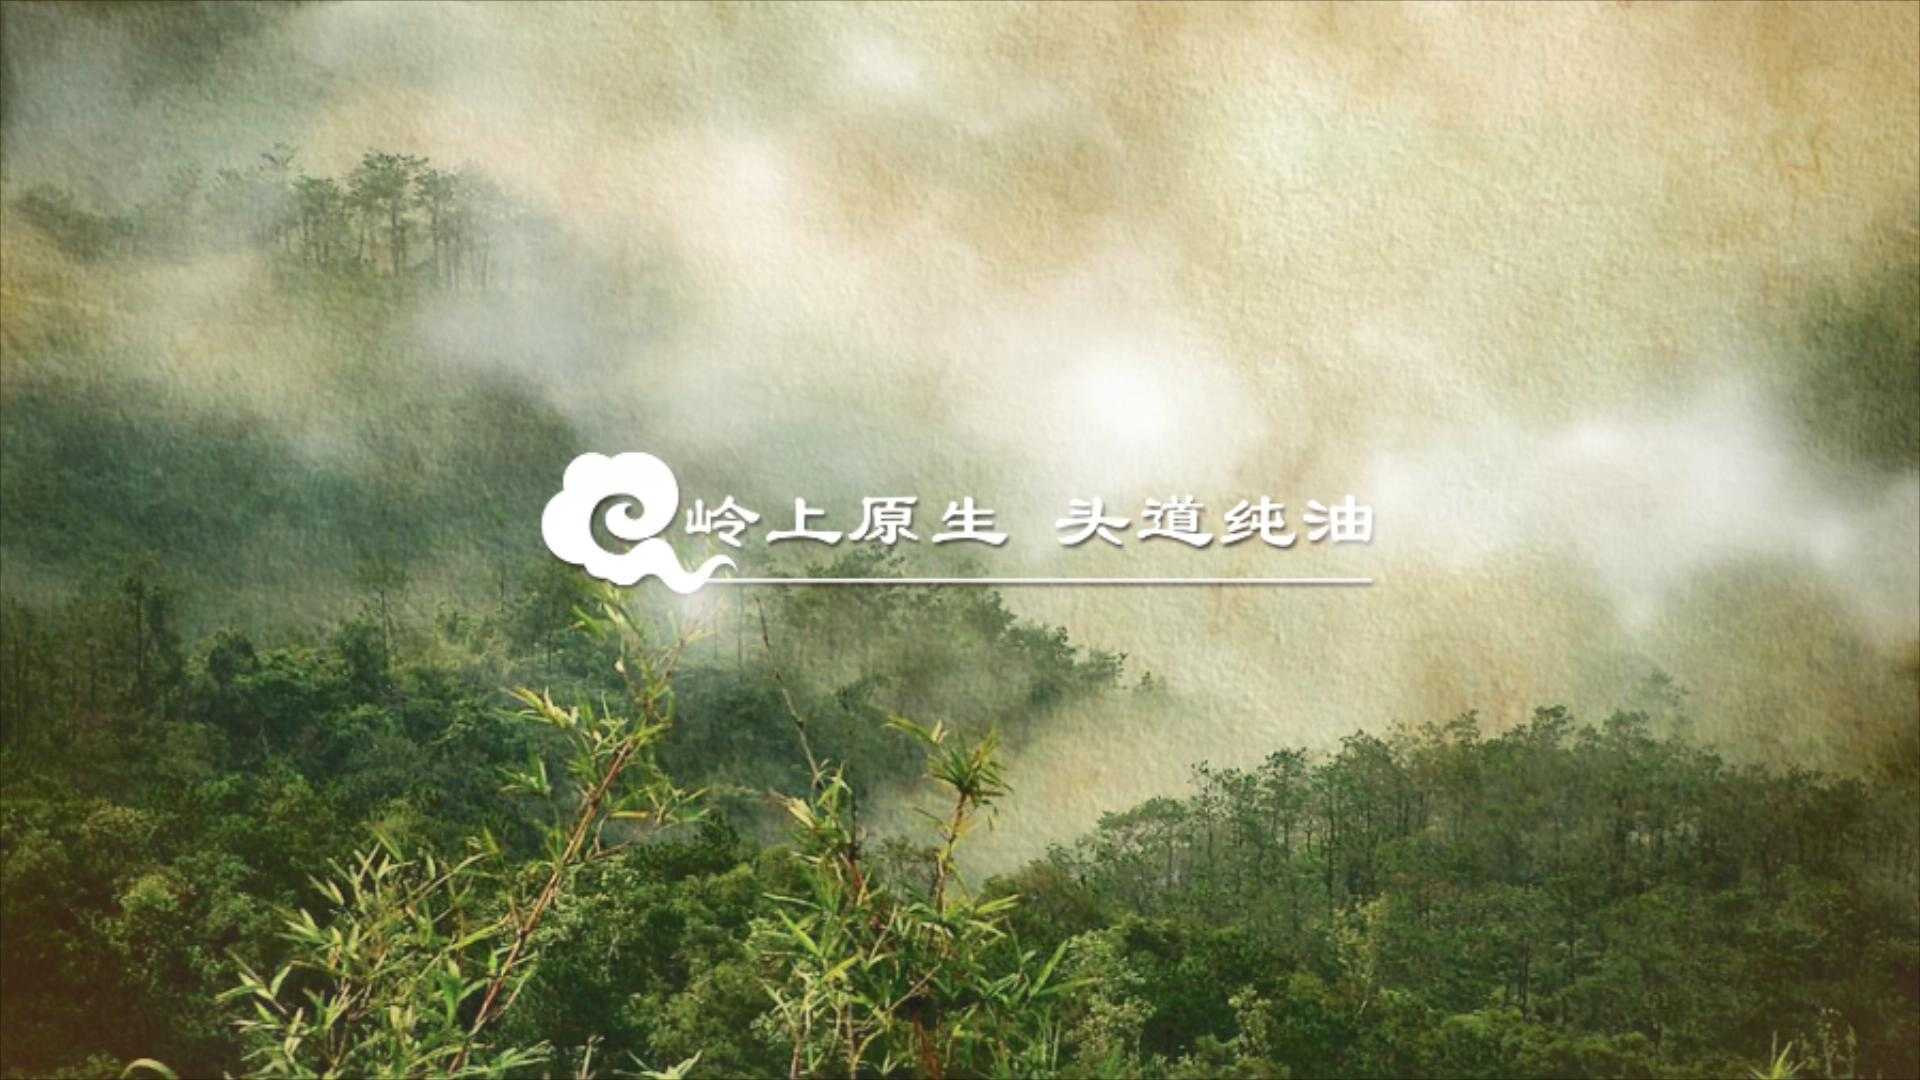 云岭茶油广告宣传片